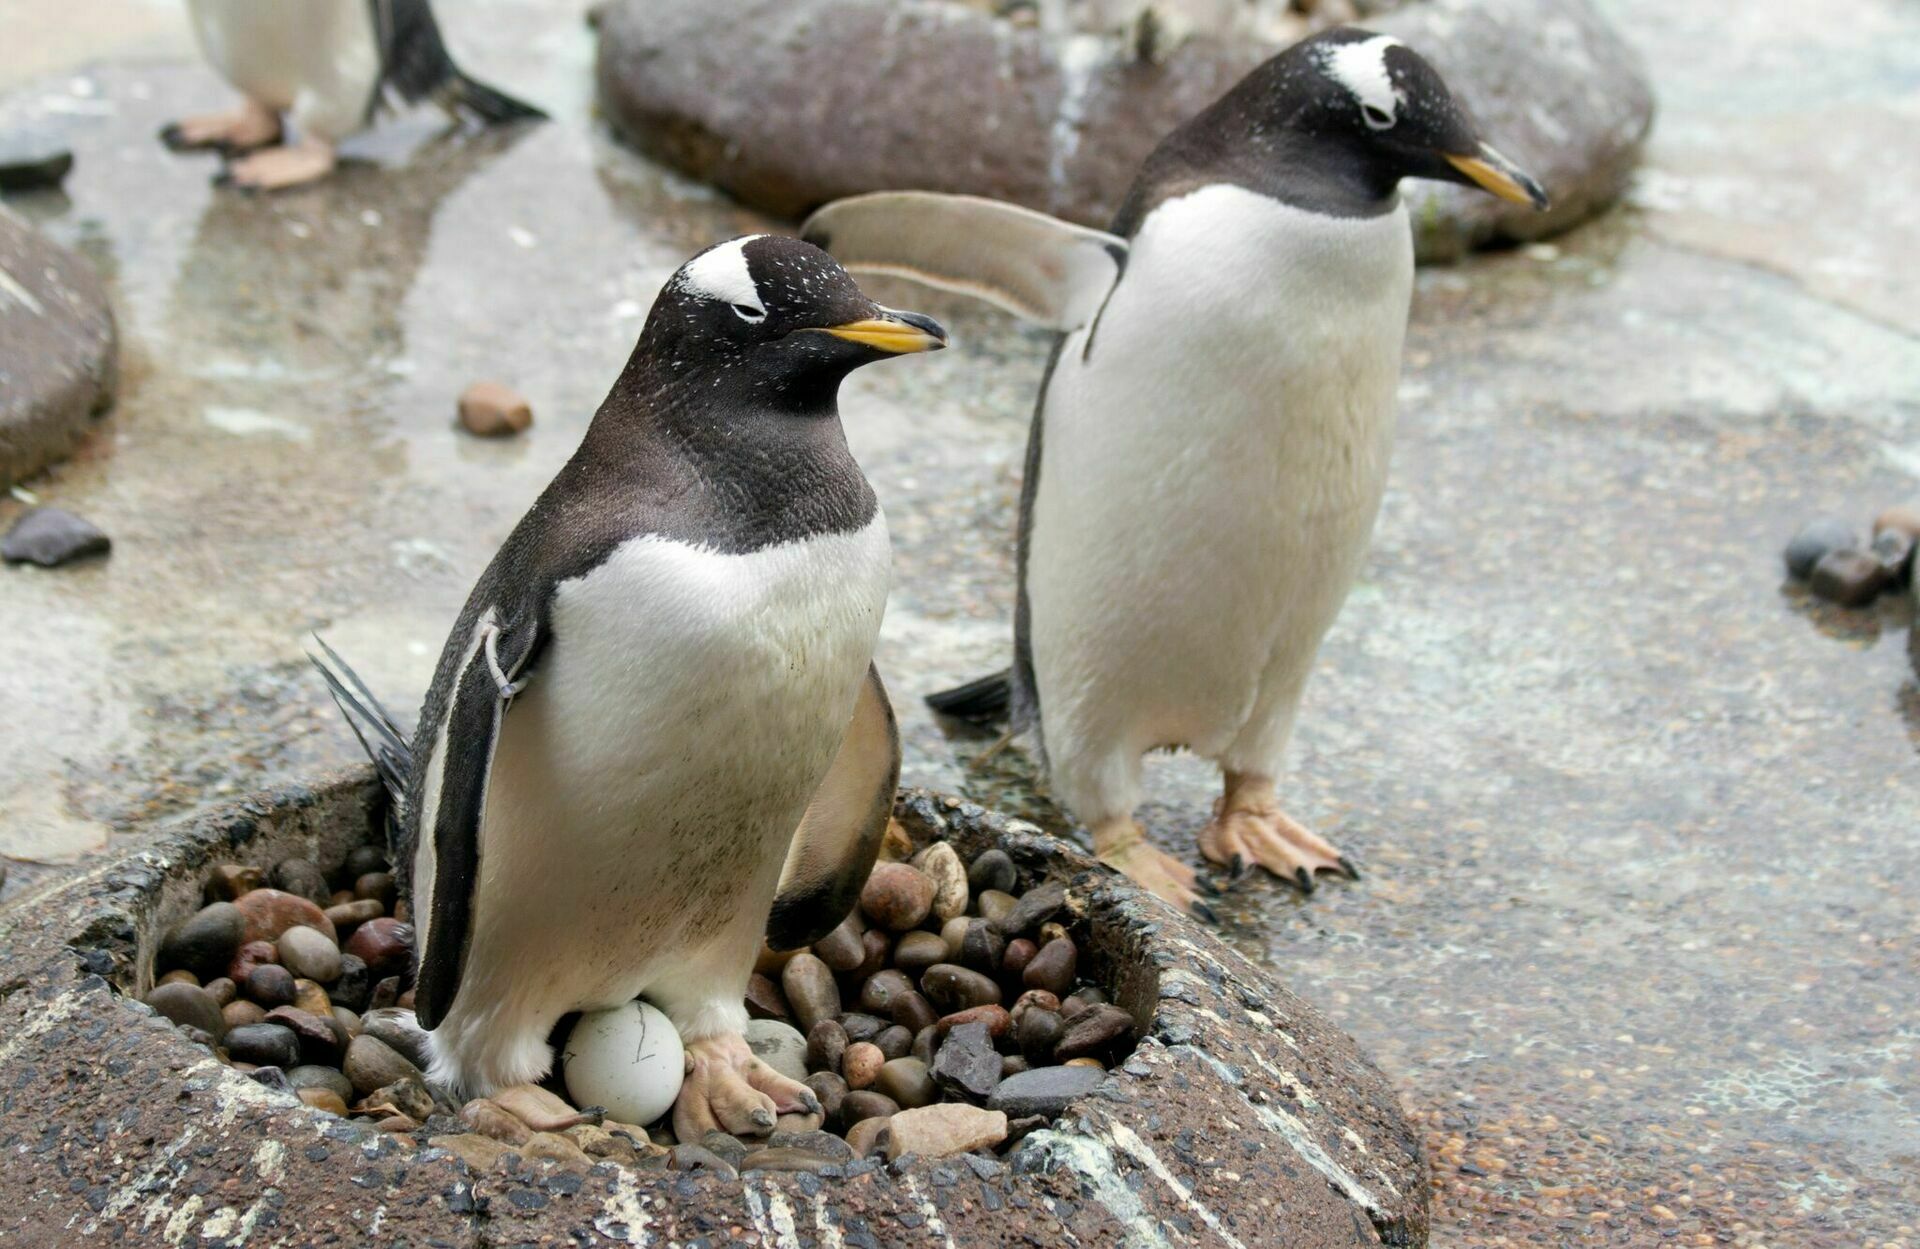 Японские физики рассчитали дальность "выстрела" пингвинами фекалий